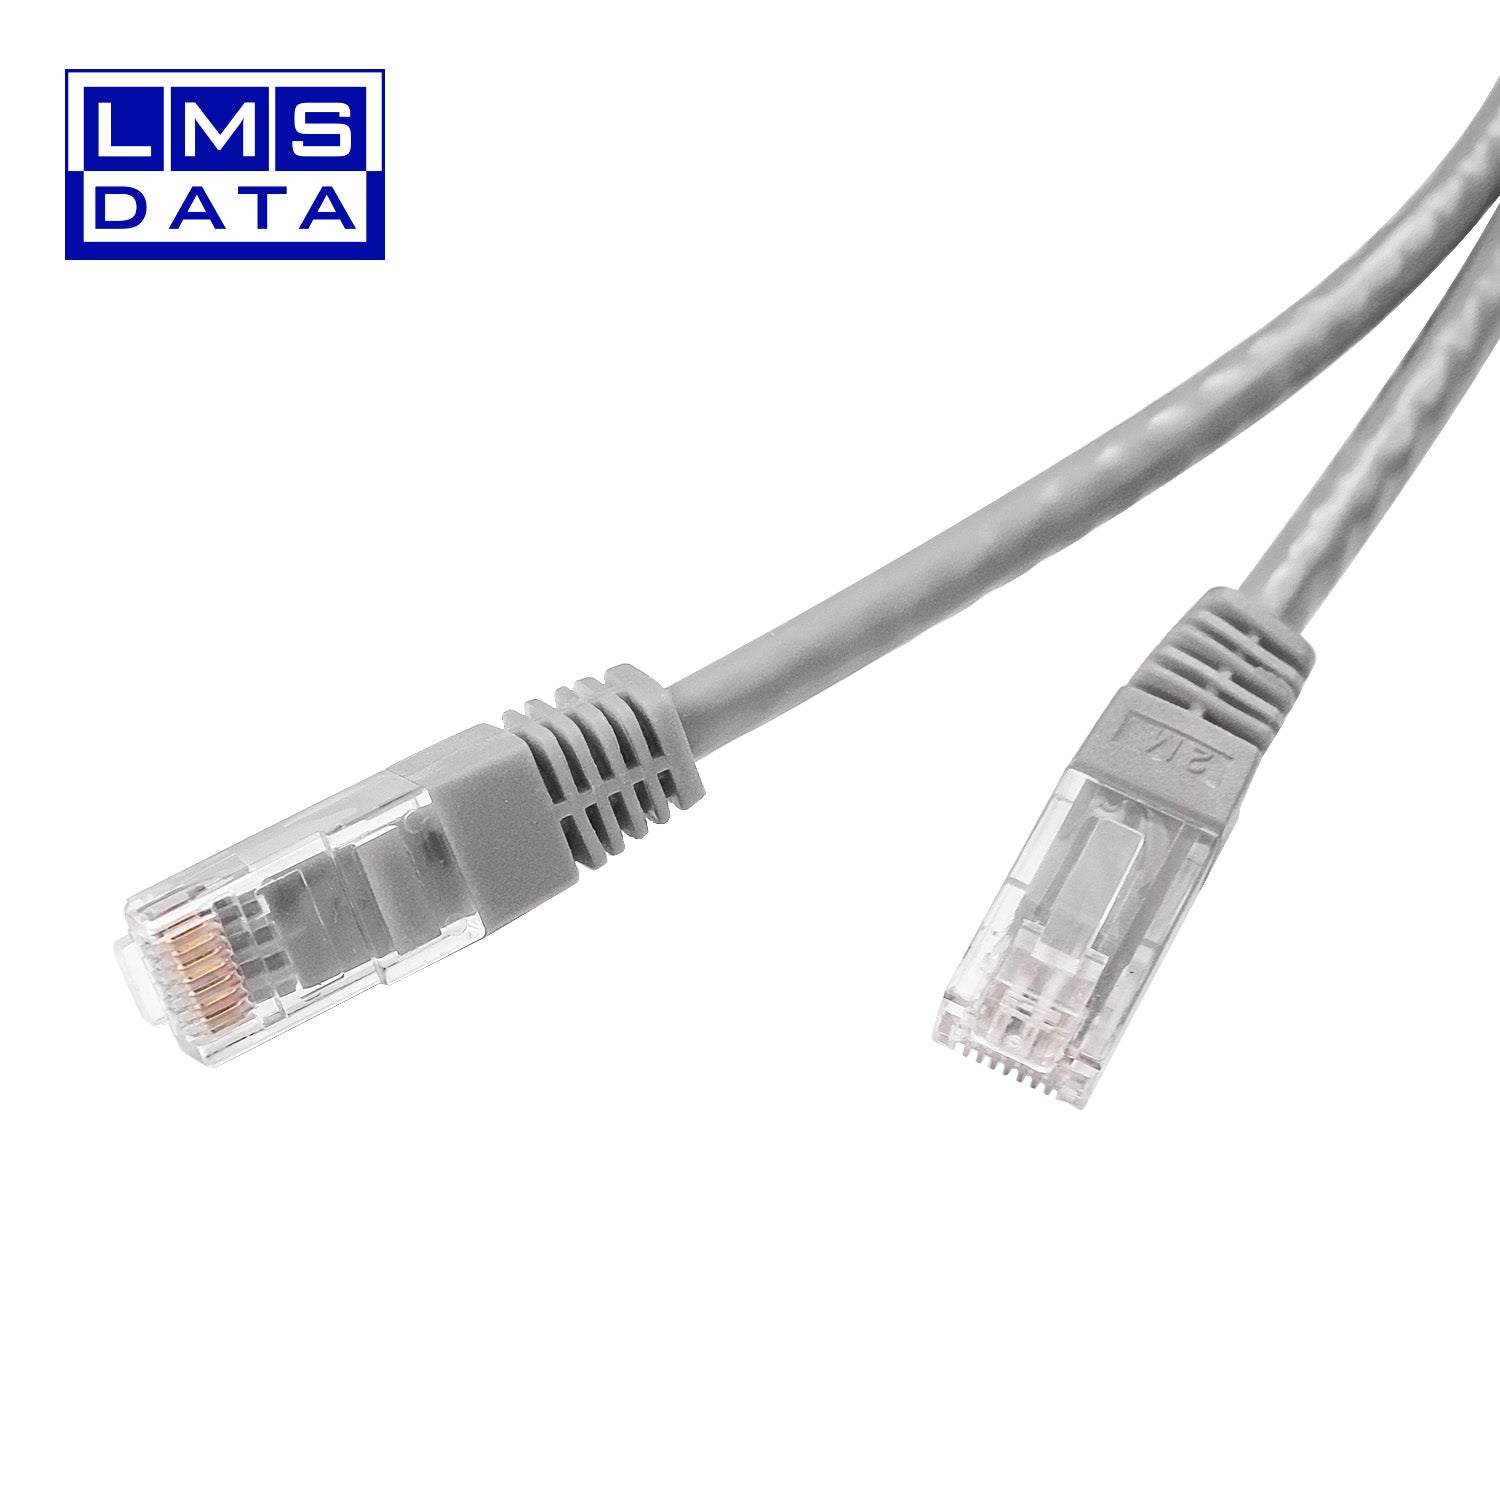 ethernet cable 10m cat6 grey colour